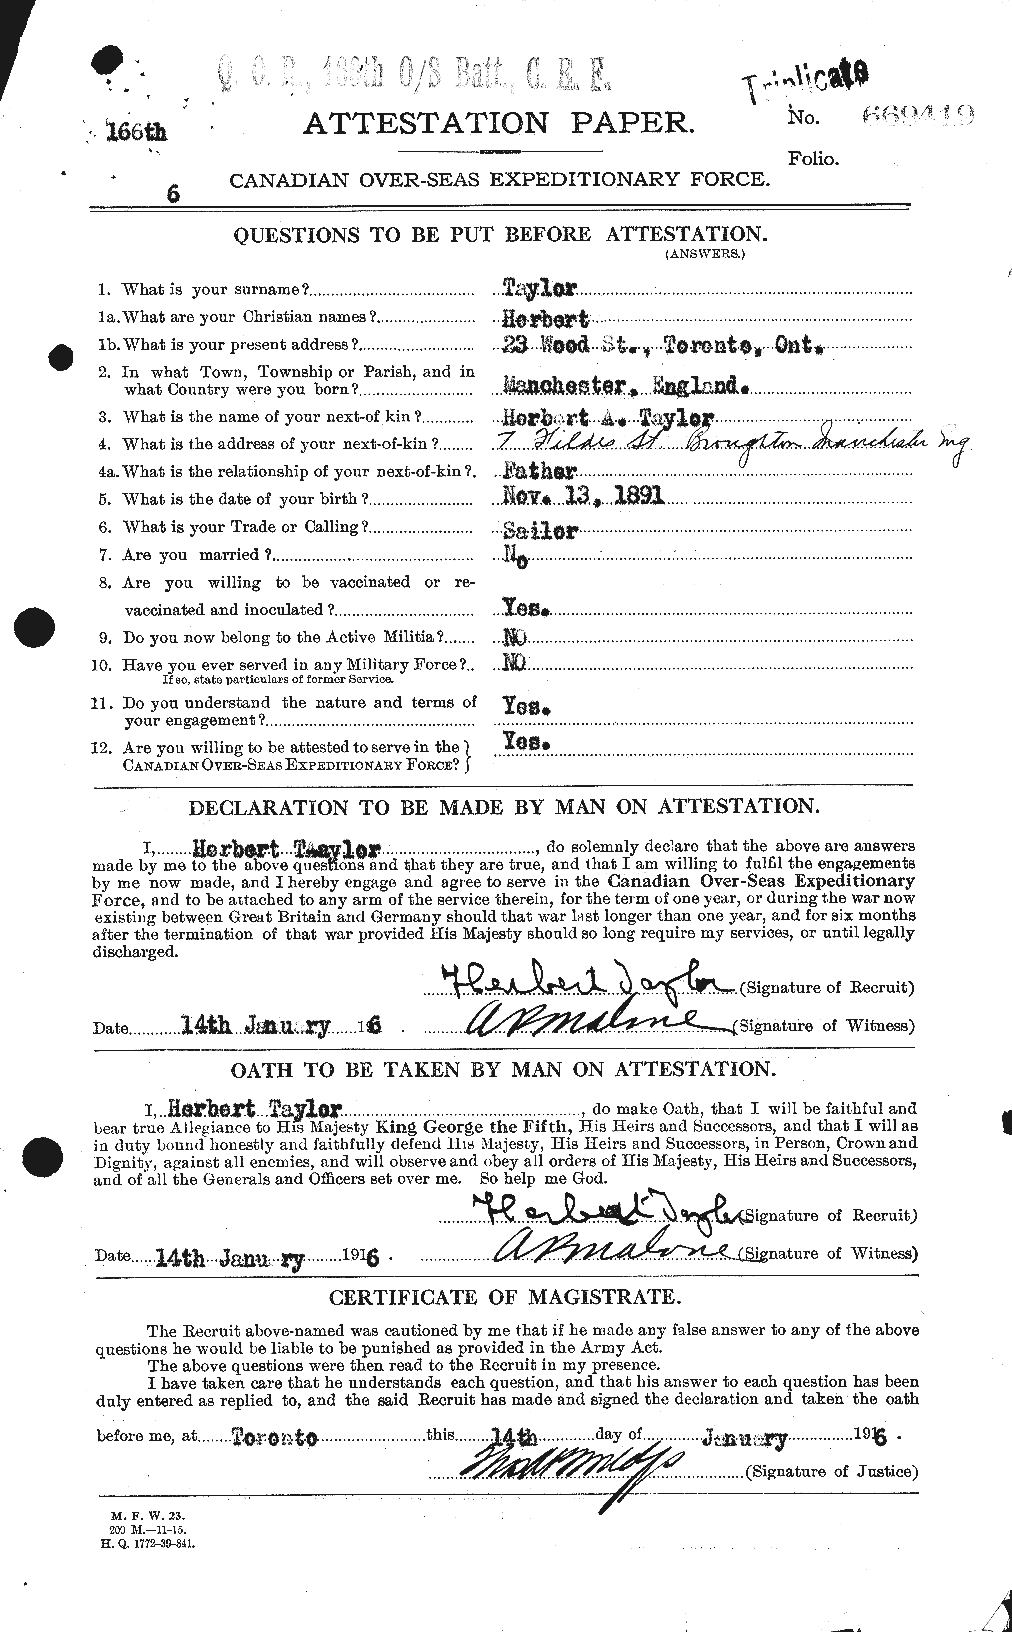 Dossiers du Personnel de la Première Guerre mondiale - CEC 626559a